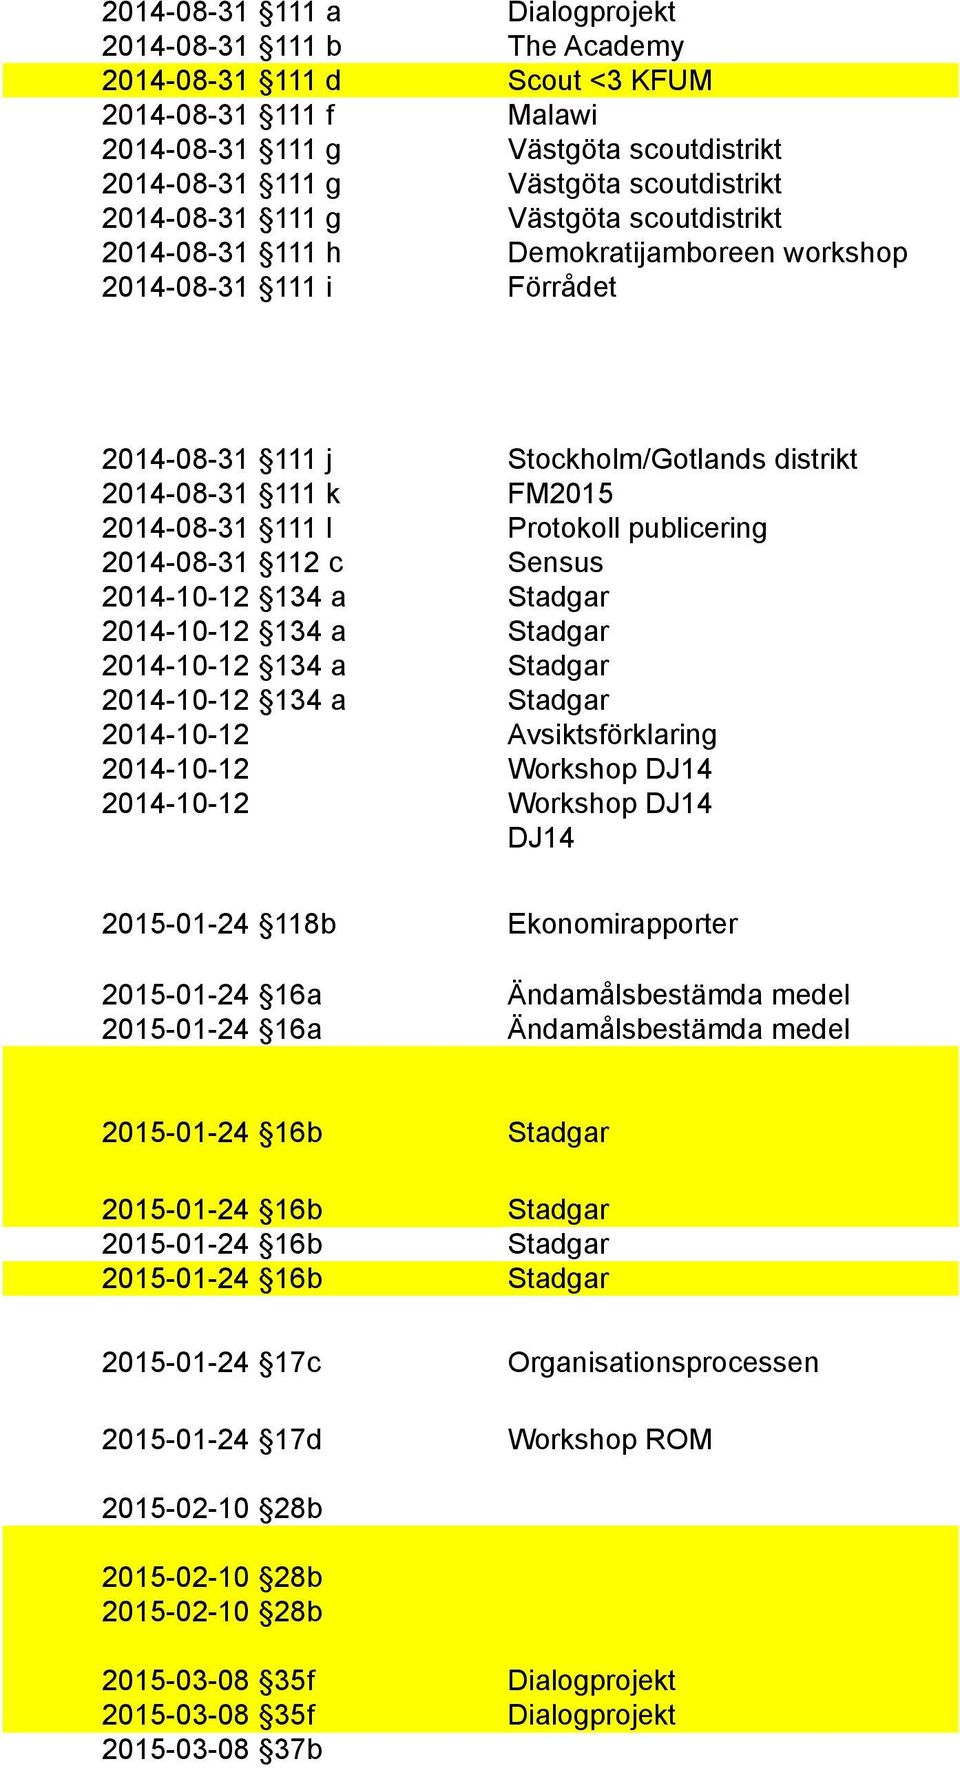 Protokoll publicering 2014-08-31 112 c Sensus 2014-10-12 134 a Stadgar 2014-10-12 134 a Stadgar 2014-10-12 134 a Stadgar 2014-10-12 134 a Stadgar 2014-10-12 Avsiktsförklaring 2014-10-12 Workshop DJ14